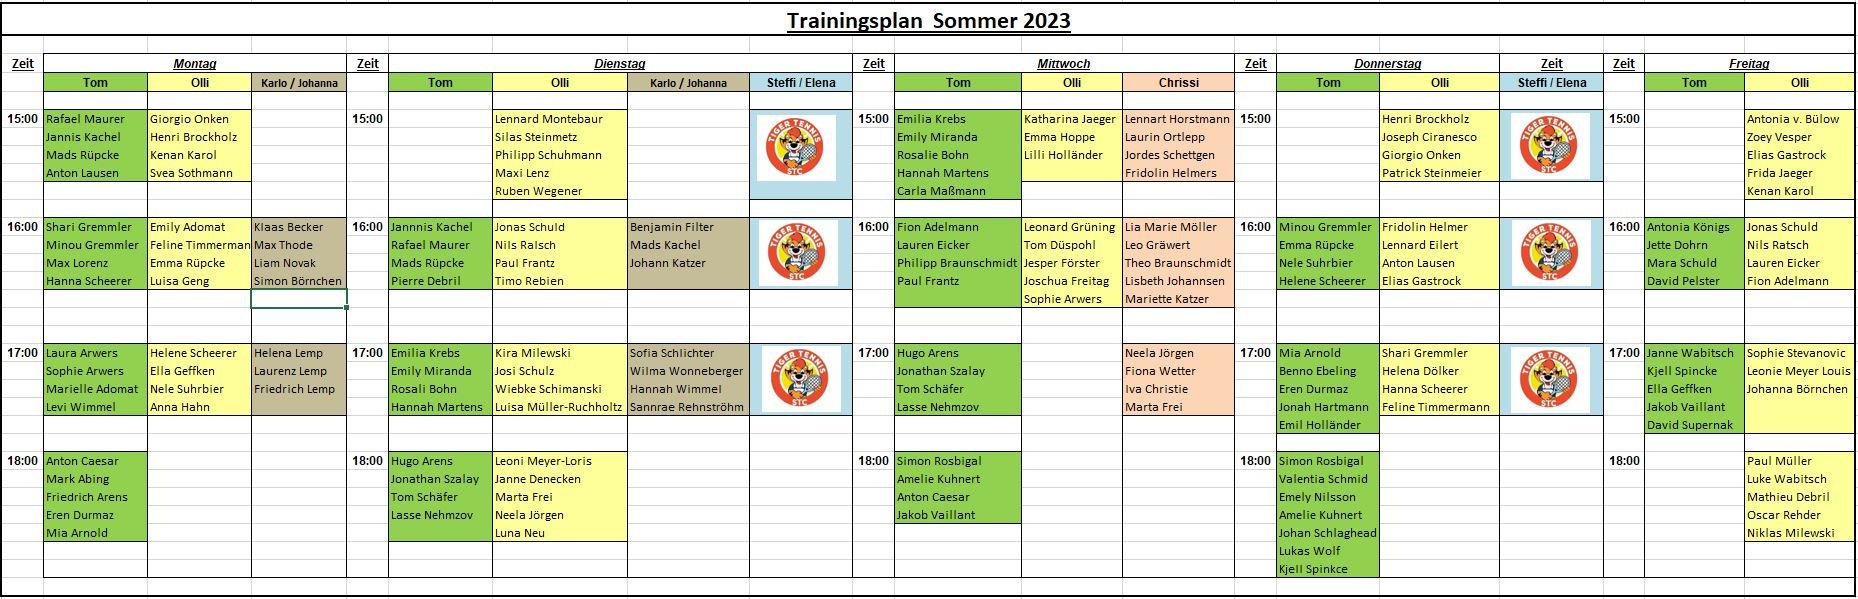 Trainingsplan Sommer 2023 V3